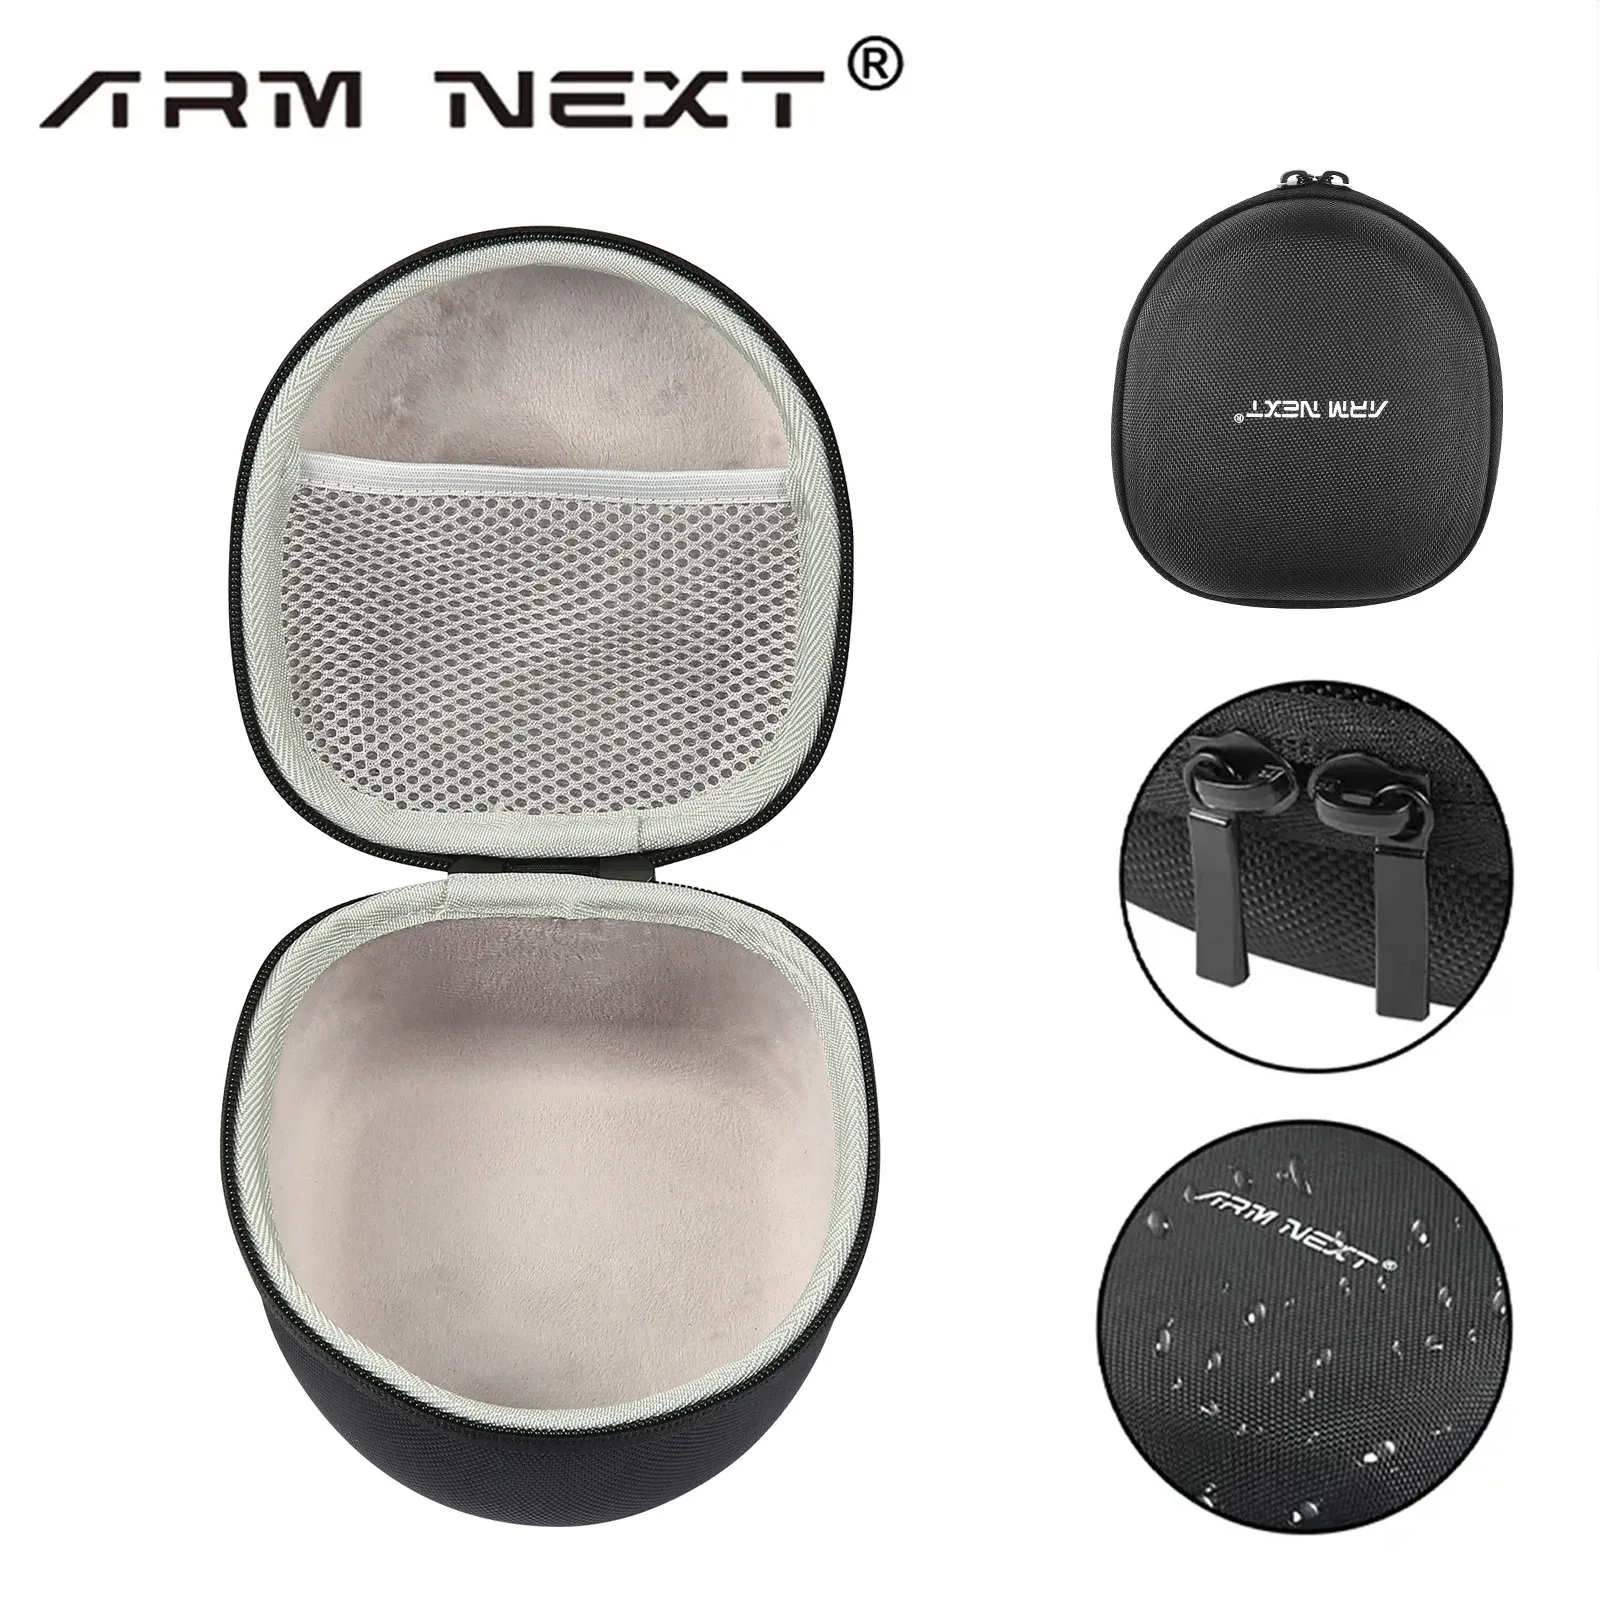 Accessori ARM NEXTTattico Casta di stoccaggio delle cuffie, auricolari da tiro elettronico, borsa portatile, custodia rigida ispessita